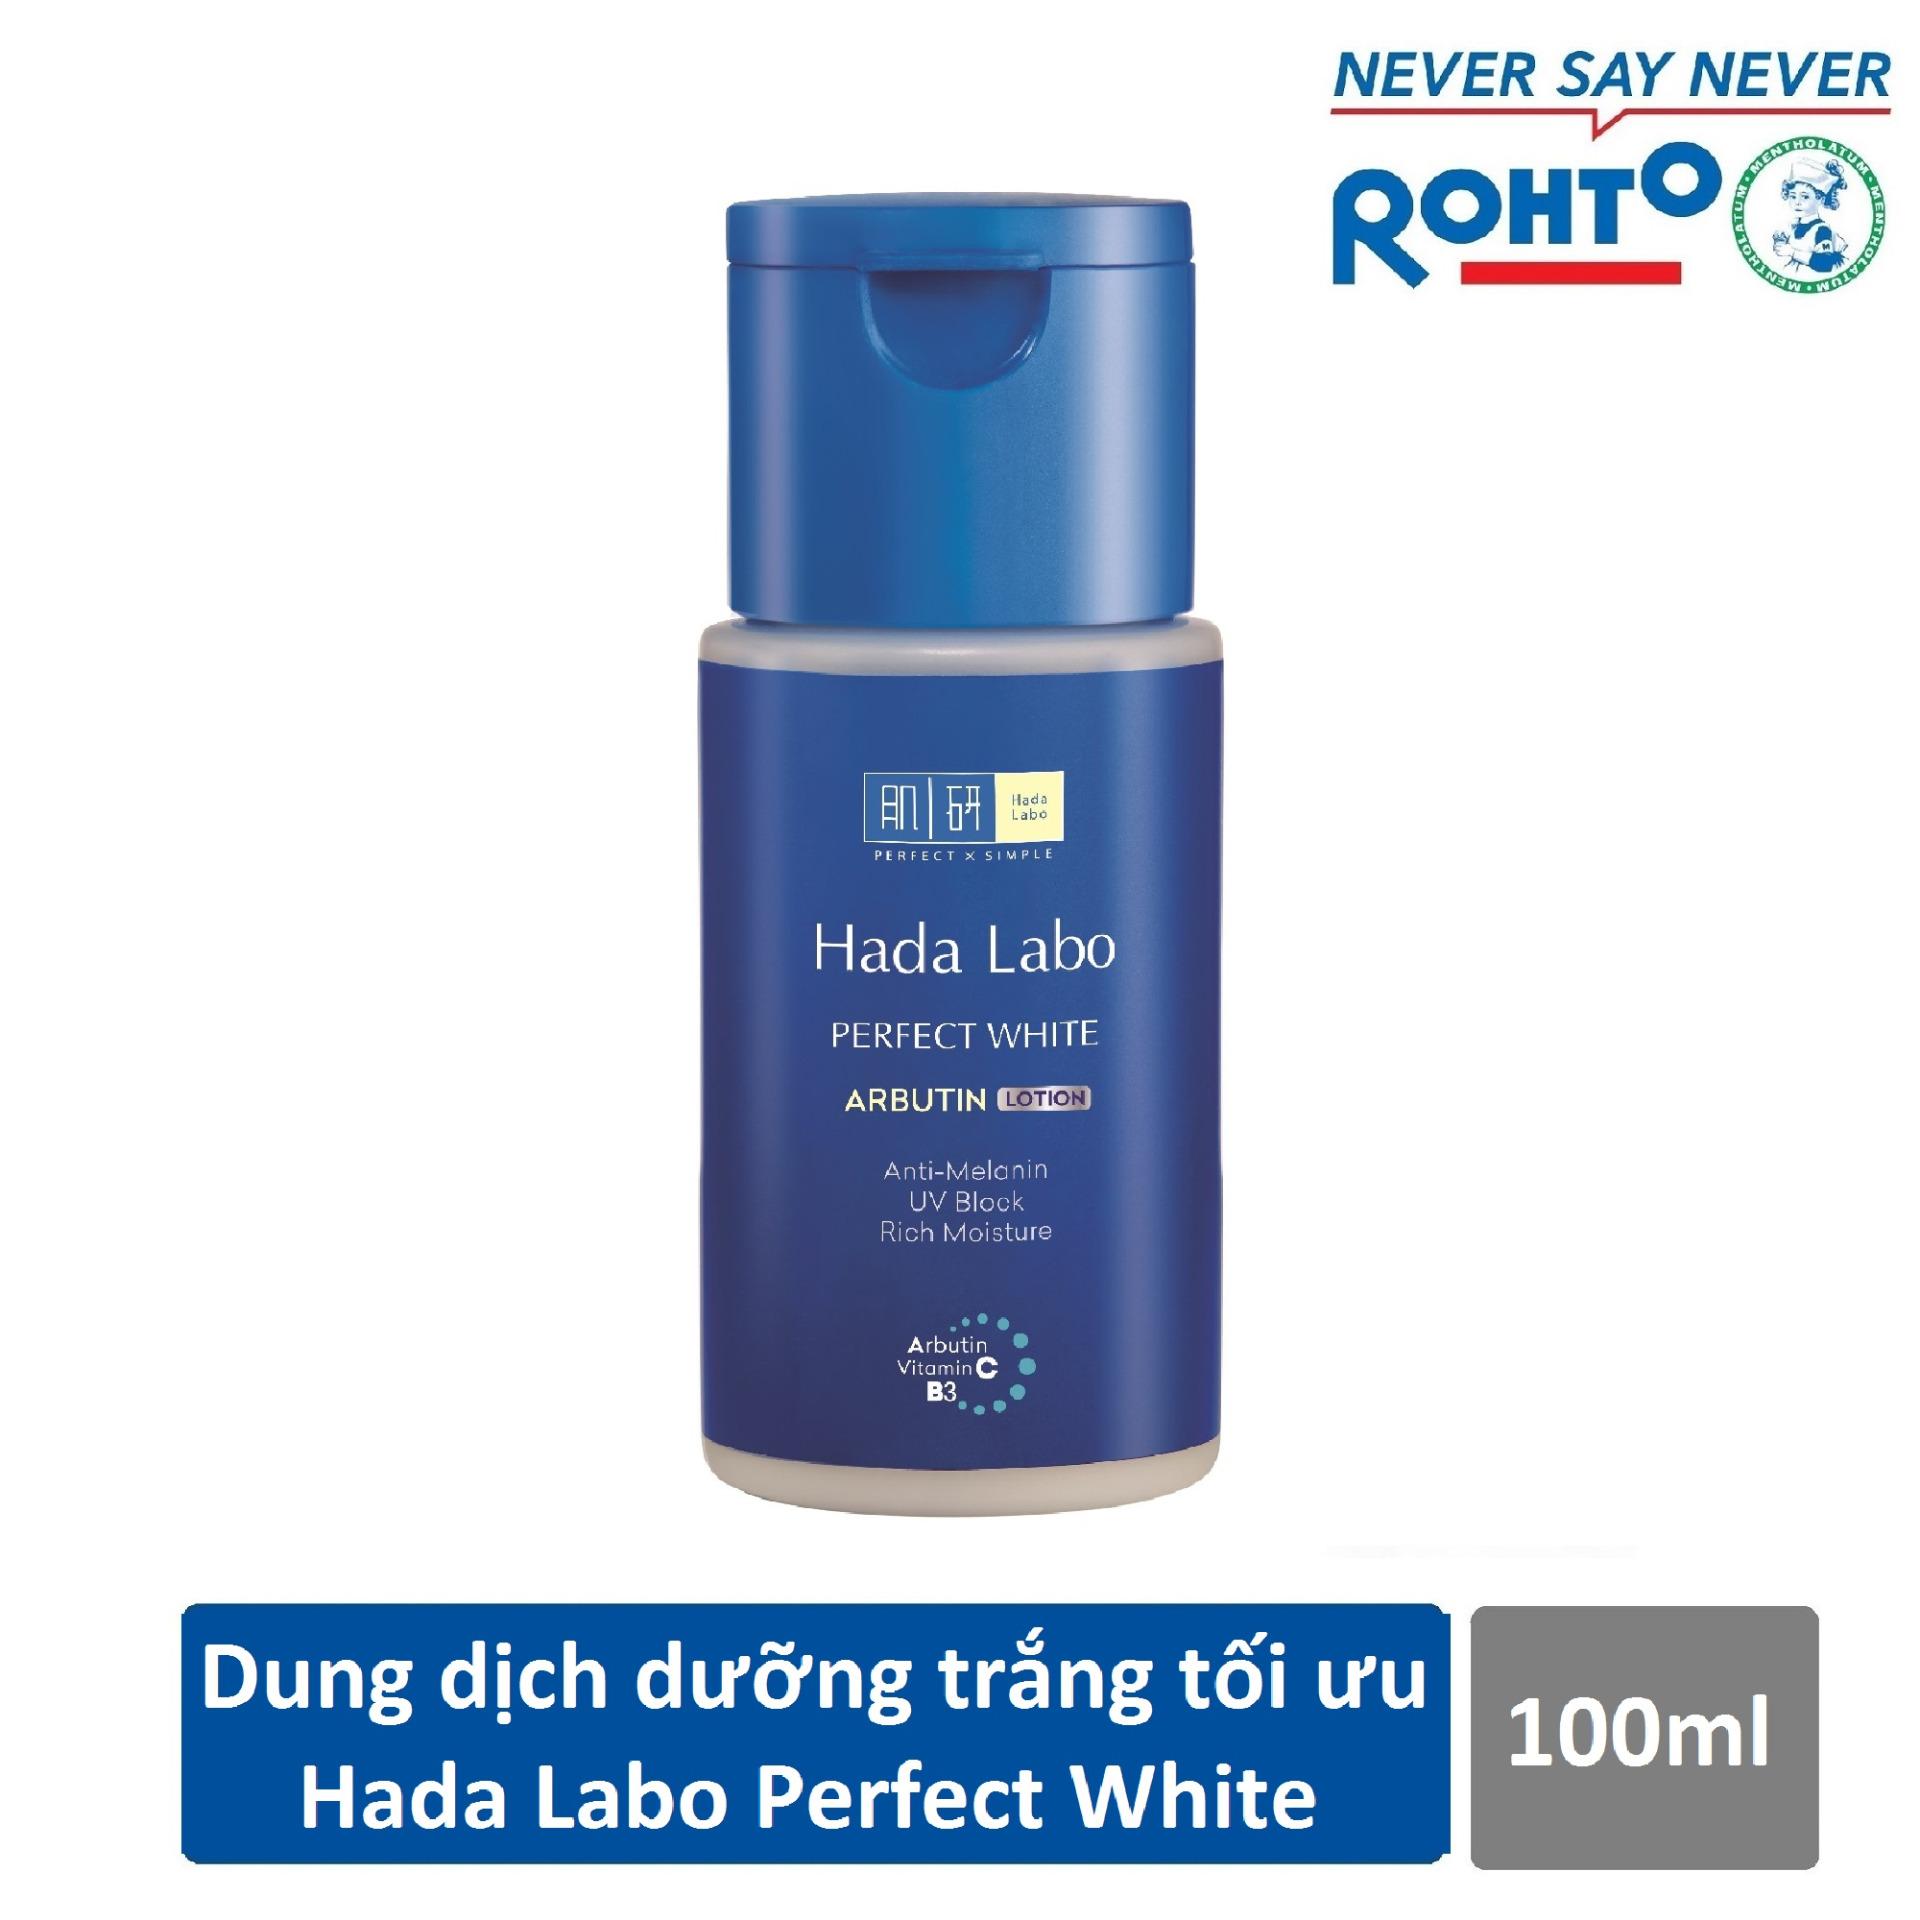 Dung dịch dưỡng trắng da tối ưu Hada Labo Perfect White Lotion 100ml